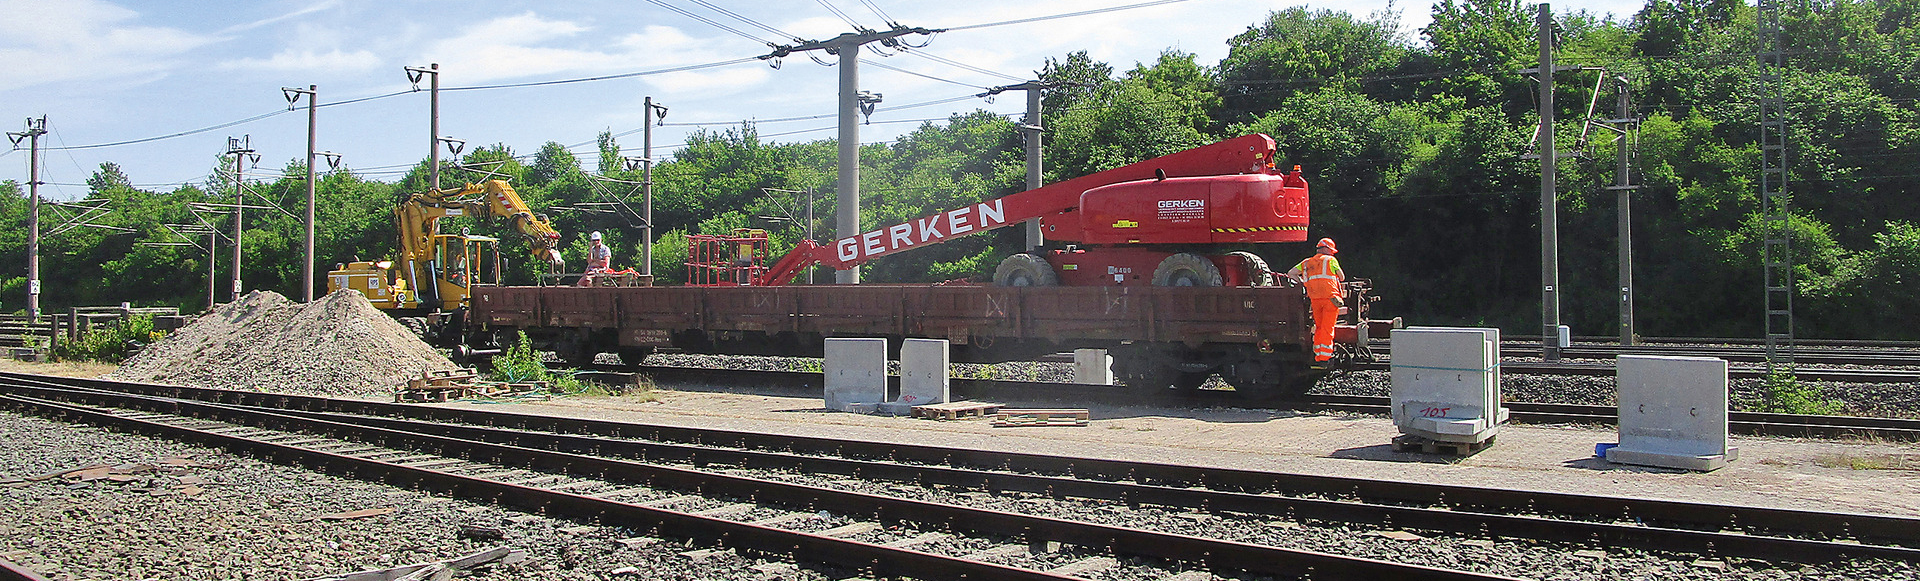 Zwei Bauarbeiter auf einem Güterwagen in einer Gleisbaustelle.